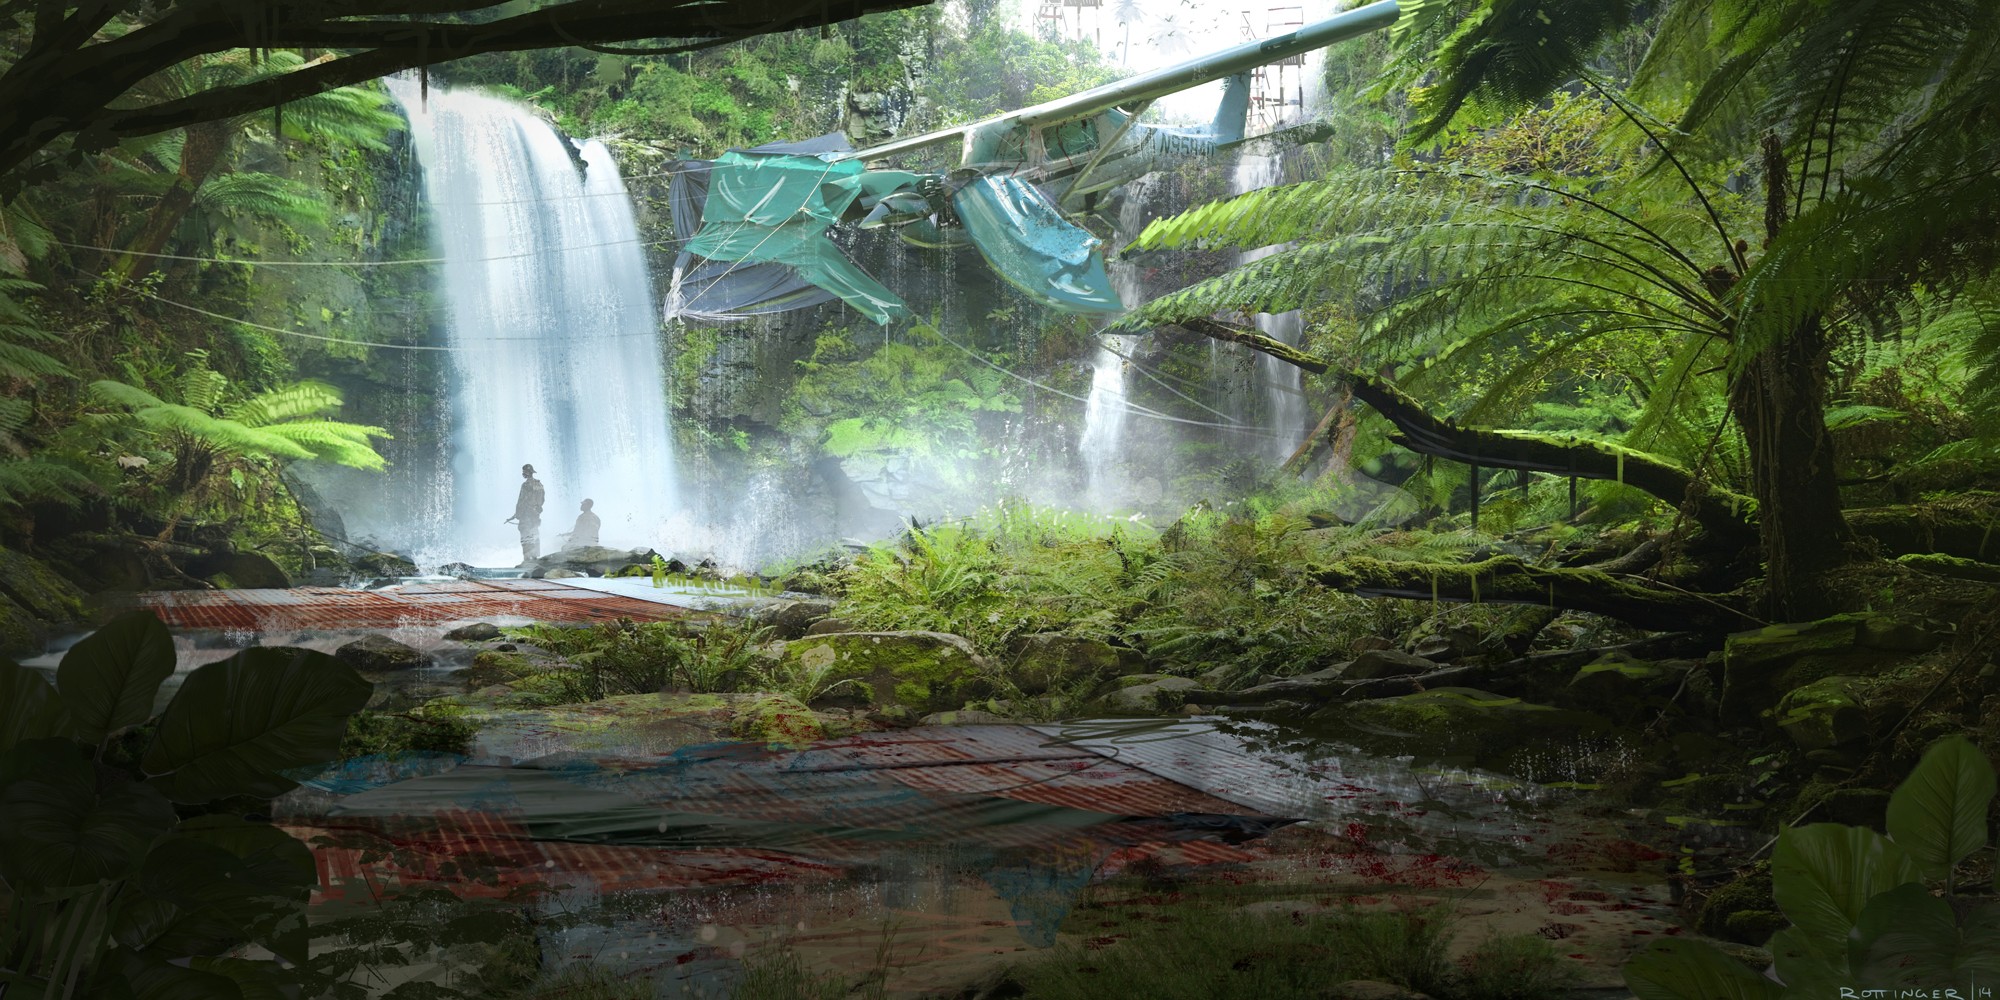 General 2000x1000 artwork concept art nature survival jungle aircraft wreck waterfall plants DeviantArt